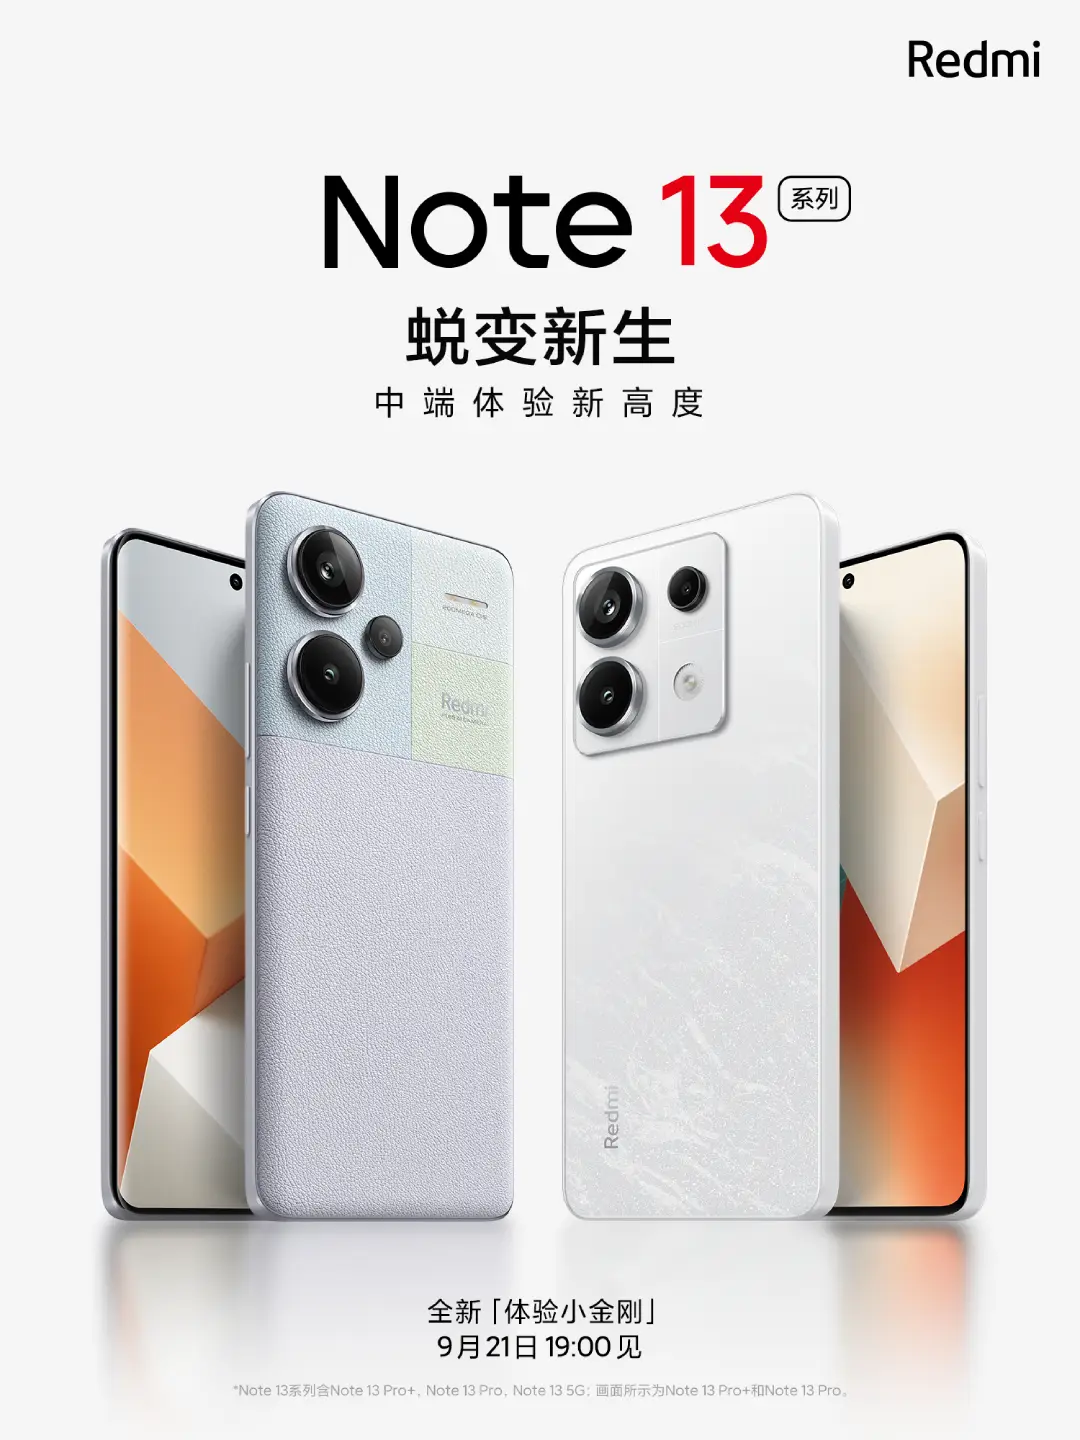 Megvan a Redmi Note 13 sorozat bemutató dátuma!